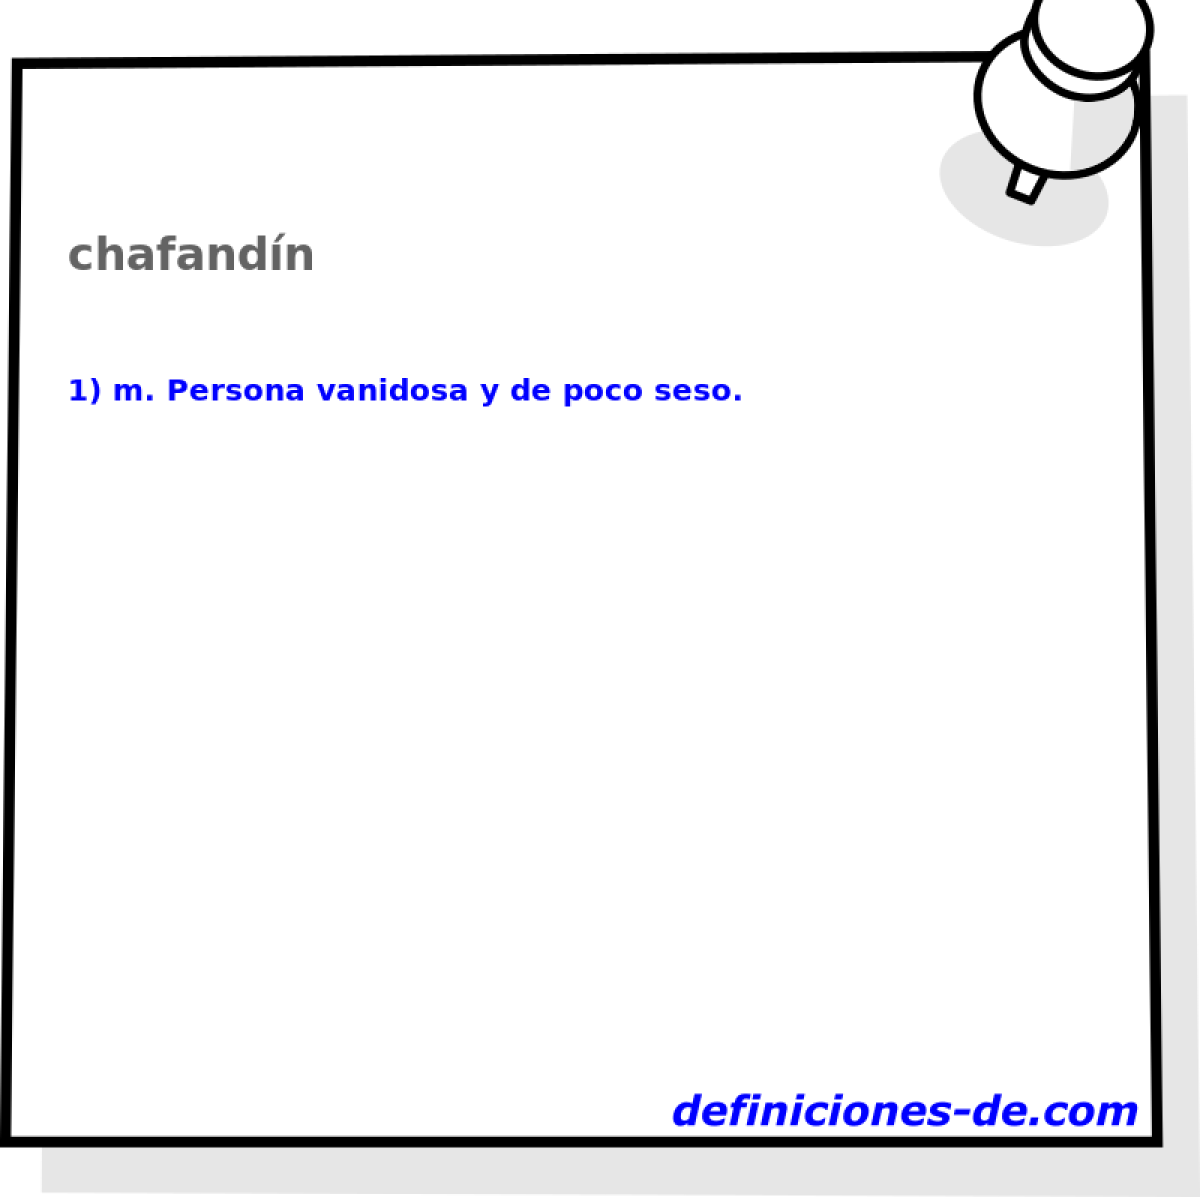 chafandn 